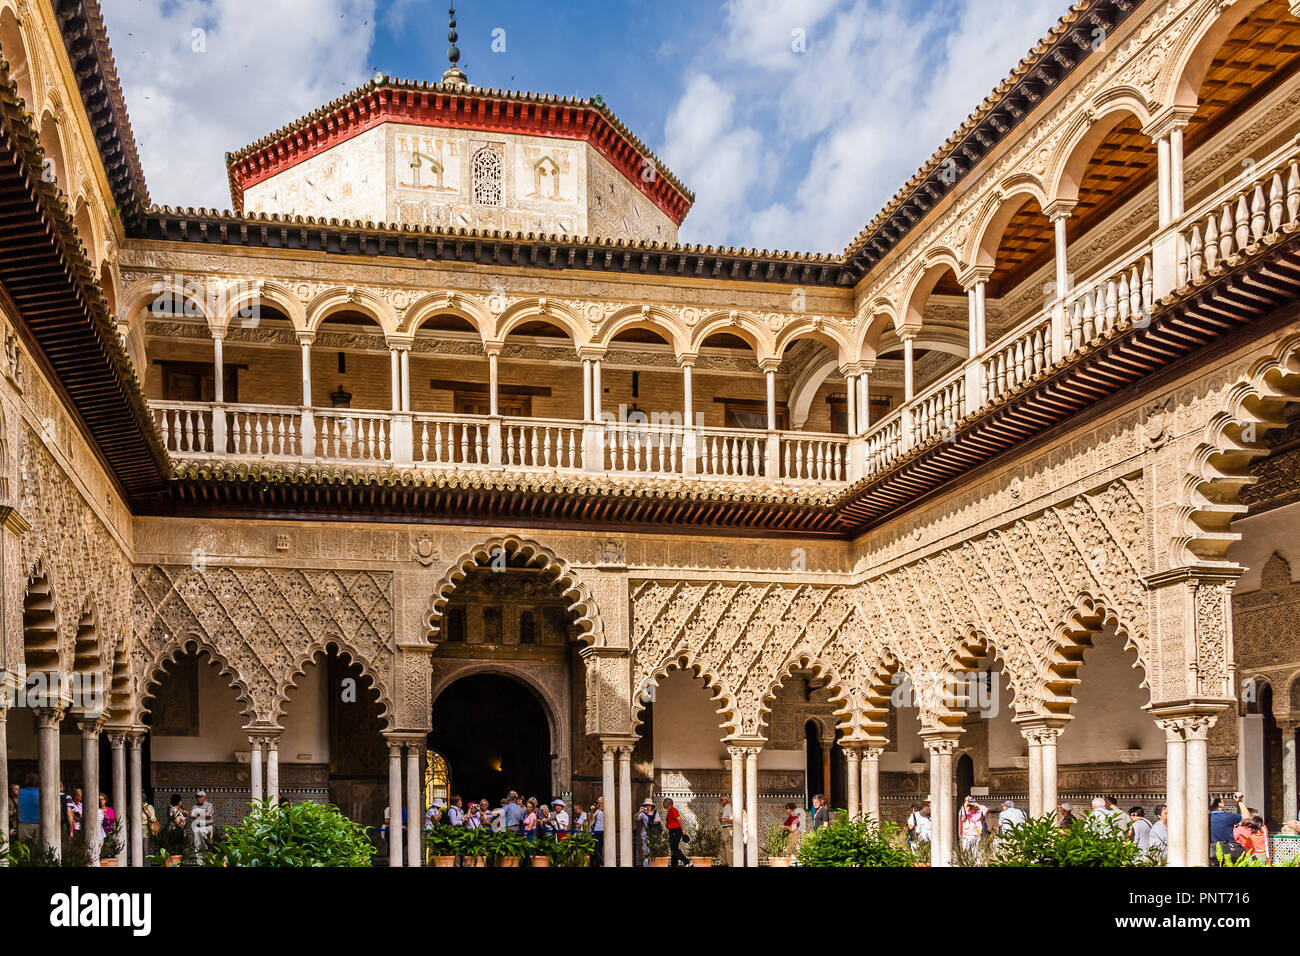 Vista di archi int il cortile interno di Reales Alcazares, Siviglia, Spagna. Foto Stock